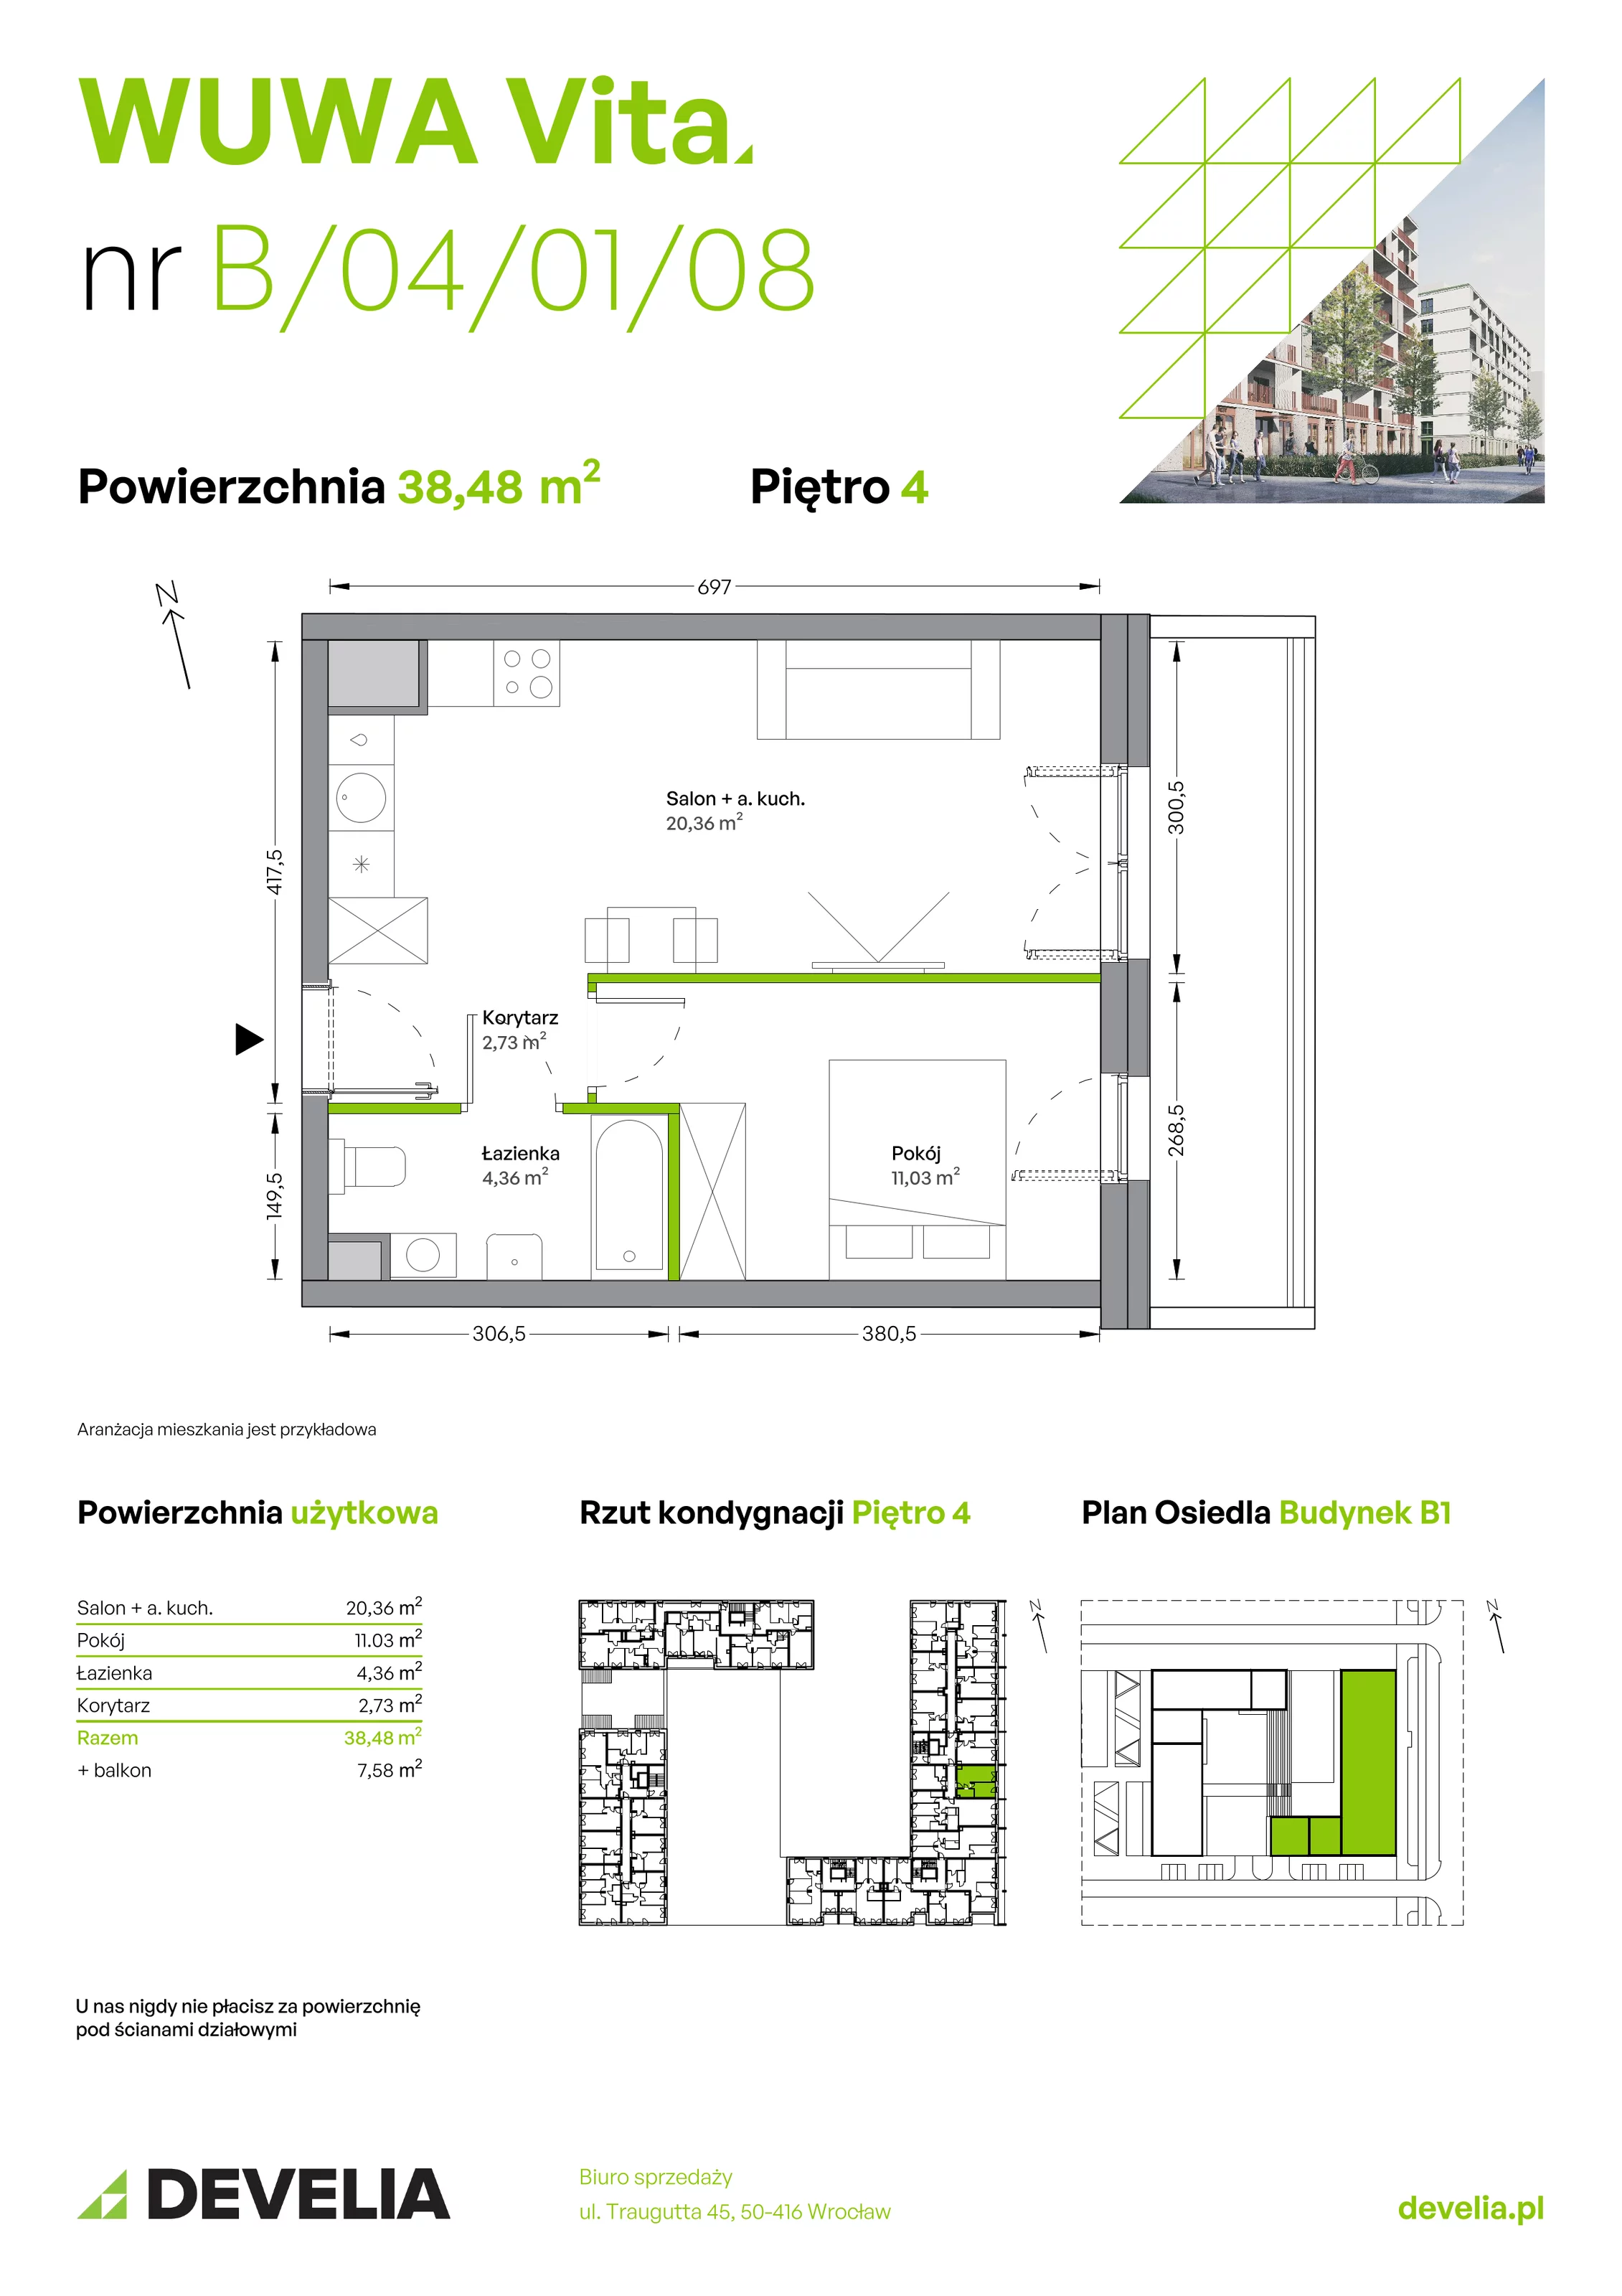 Mieszkanie 38,48 m², piętro 4, oferta nr B.04.01.08, WUWA Vita, Wrocław, Żerniki, Fabryczna, ul. Tadeusza Brzozy